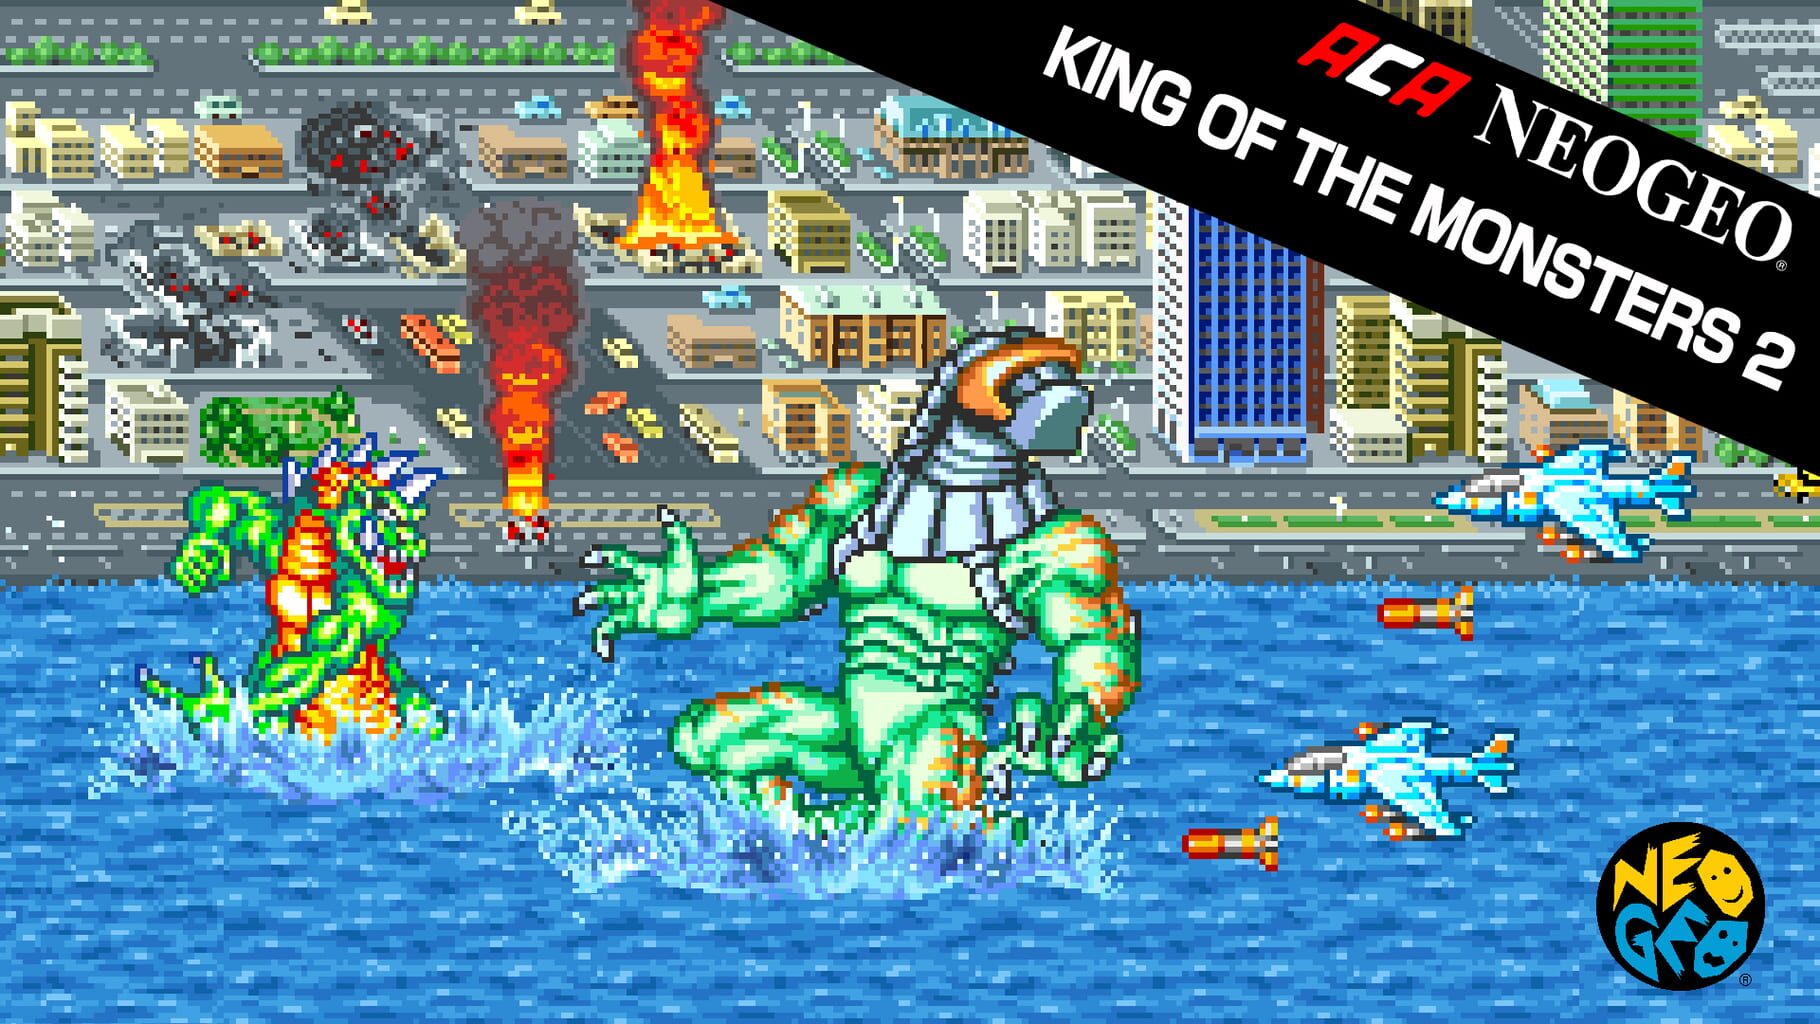 ACA Neo Geo: King of the Monsters 2 artwork